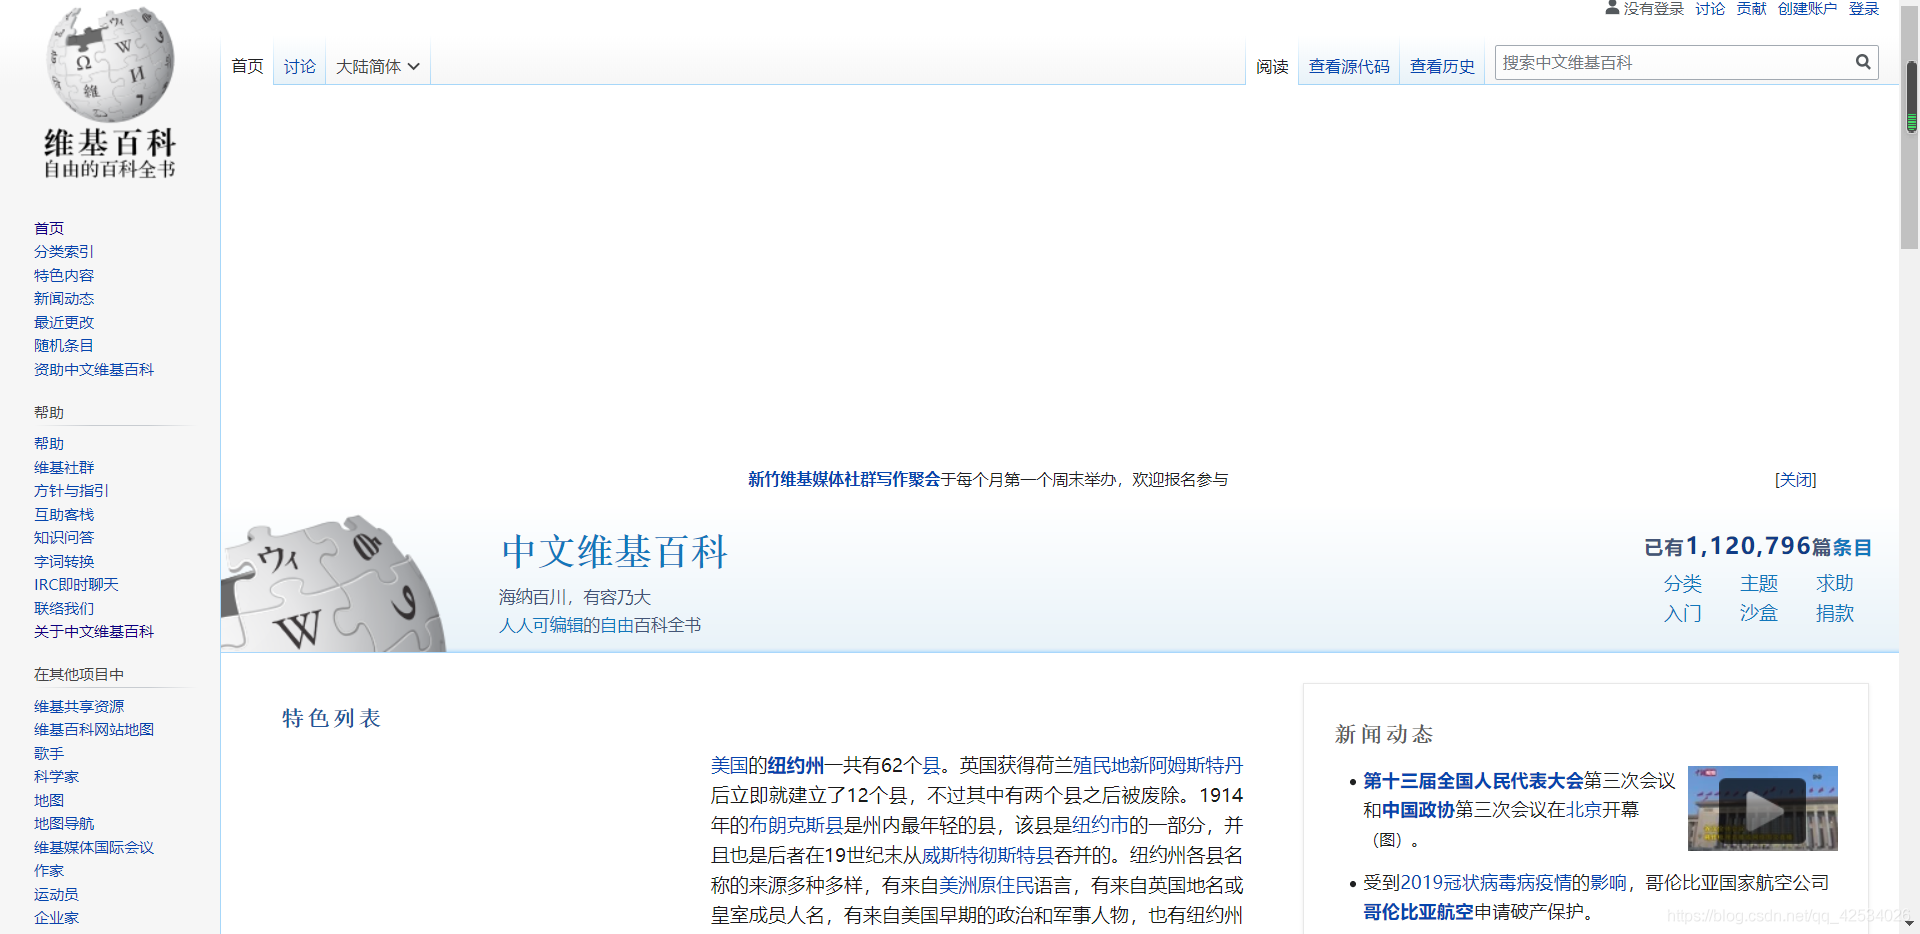 维基百科（Wikipedia）网址_中文维基搜索引擎入口_虚伪的空想家的博客  image